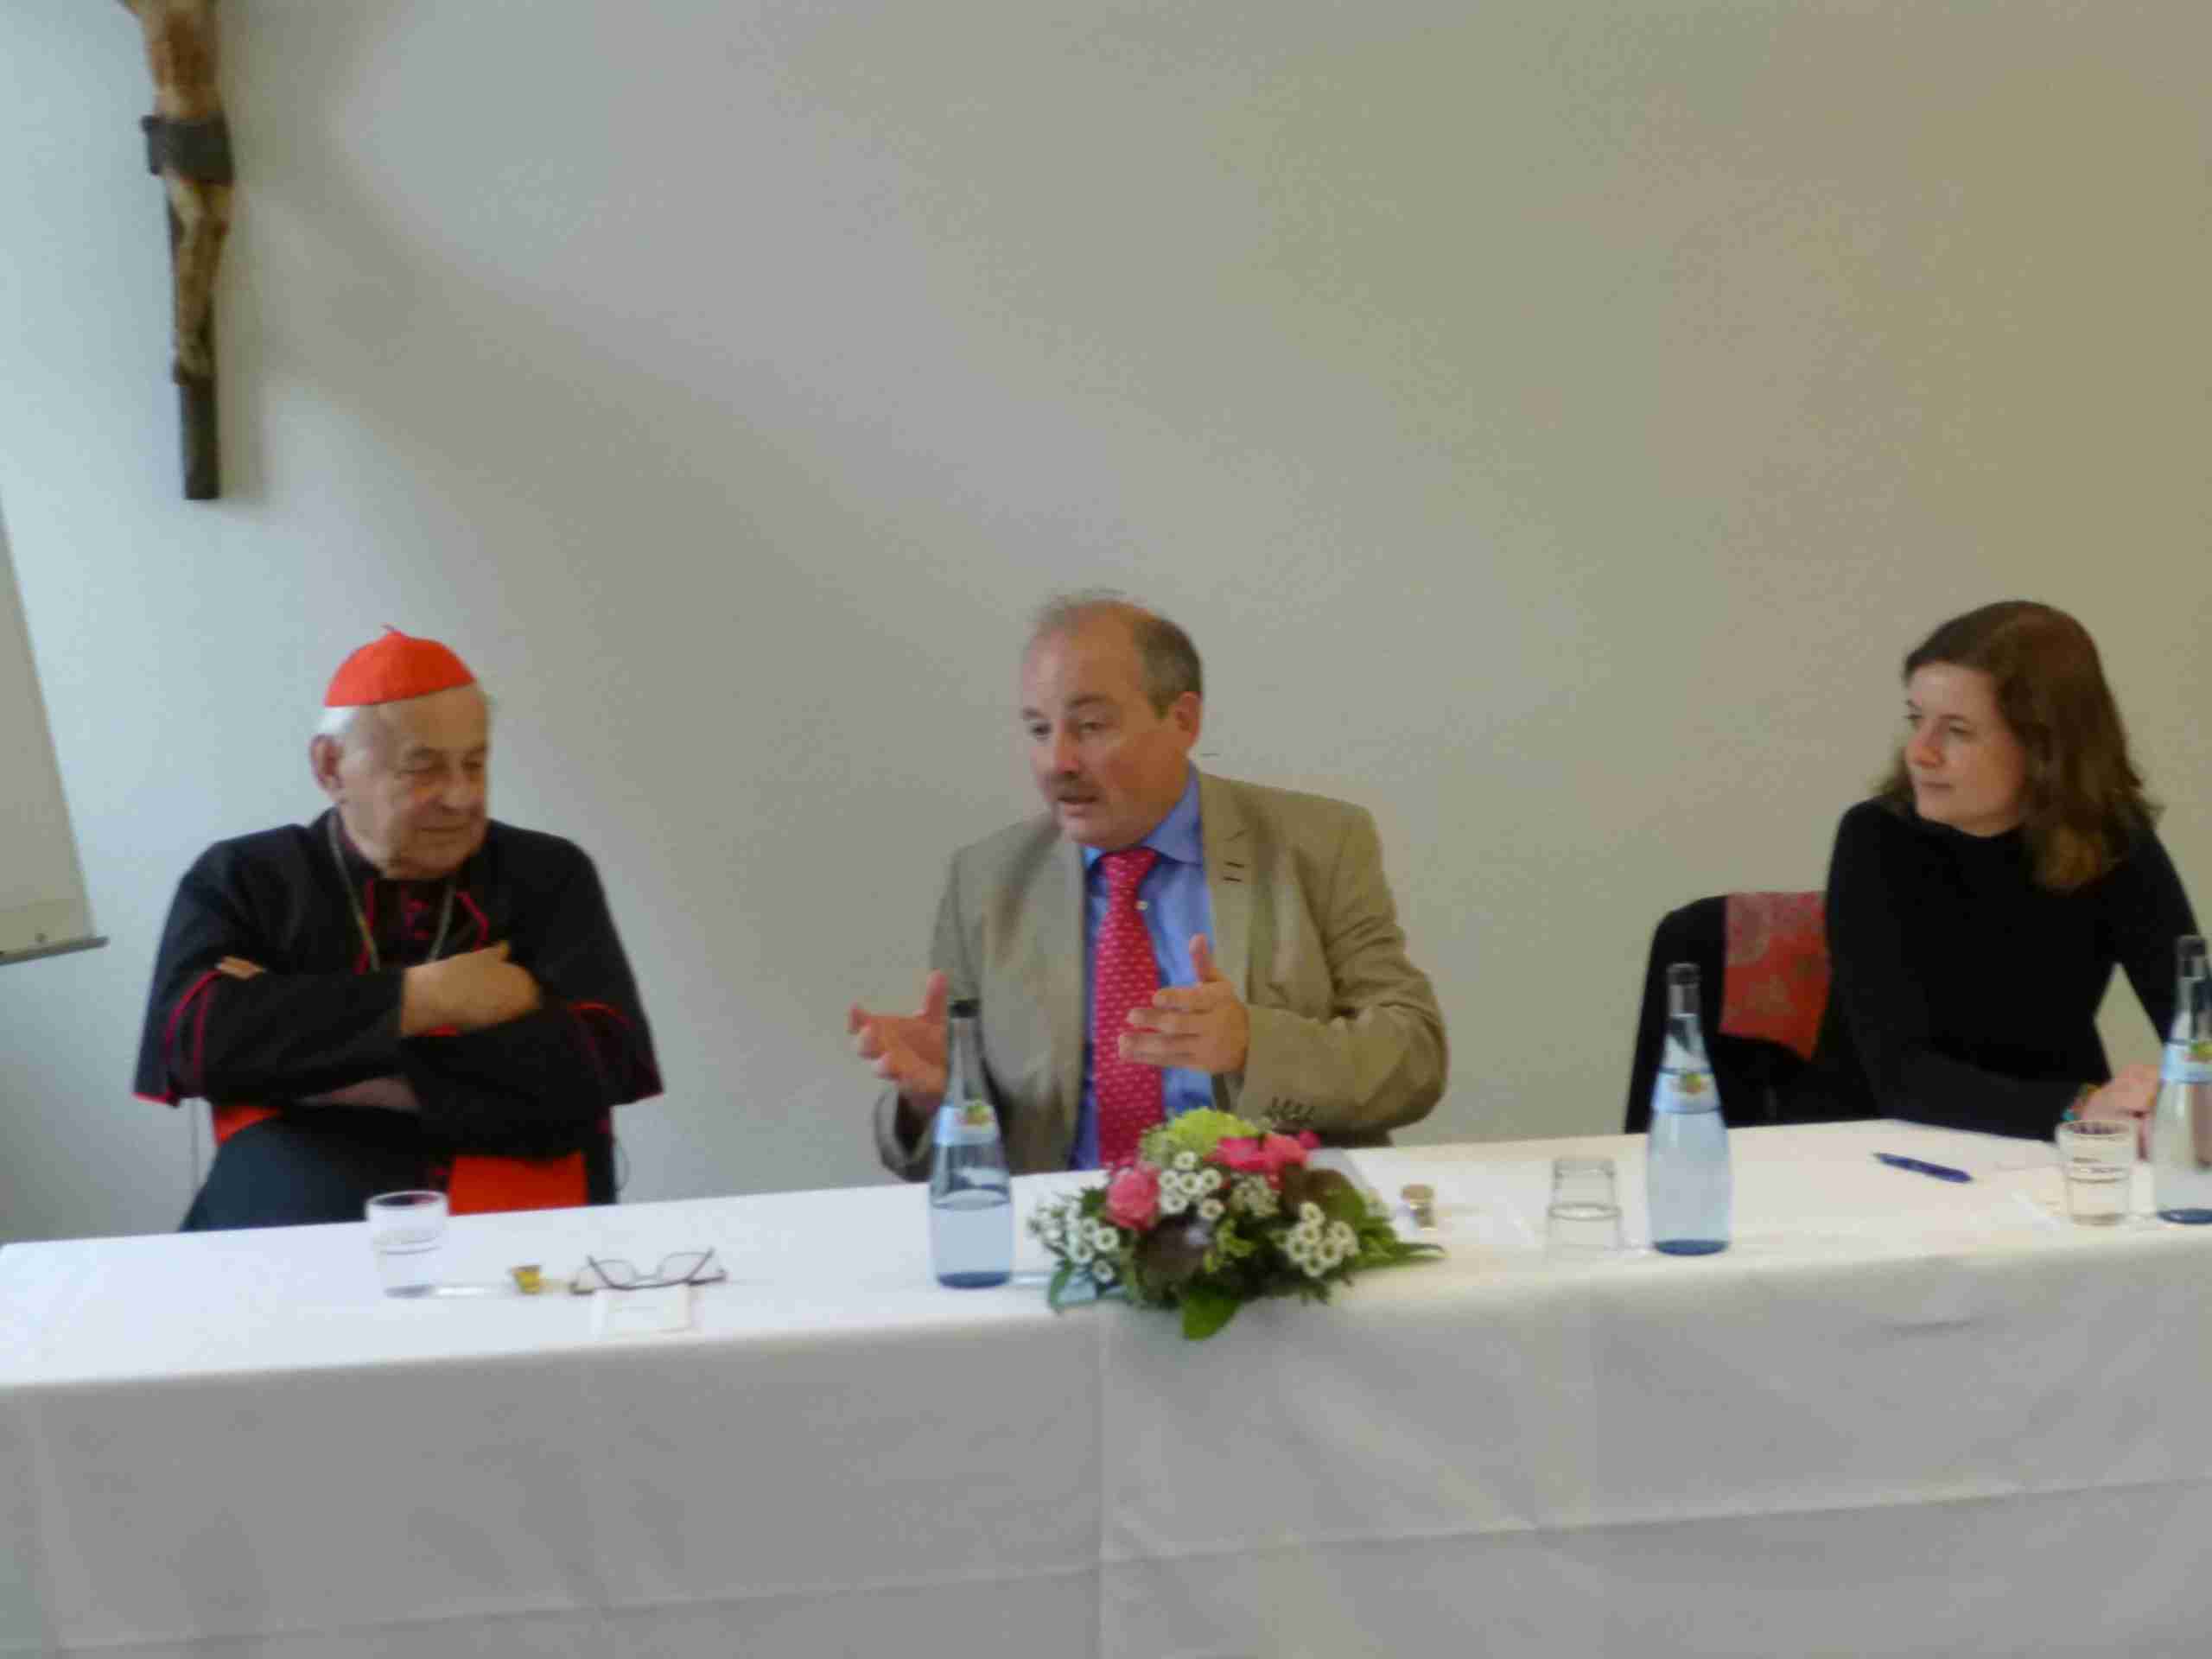 Kardinal Vlk, Prof. Dr. Rainer Bendel und Dr. Katerina Kovačková im Gespräch